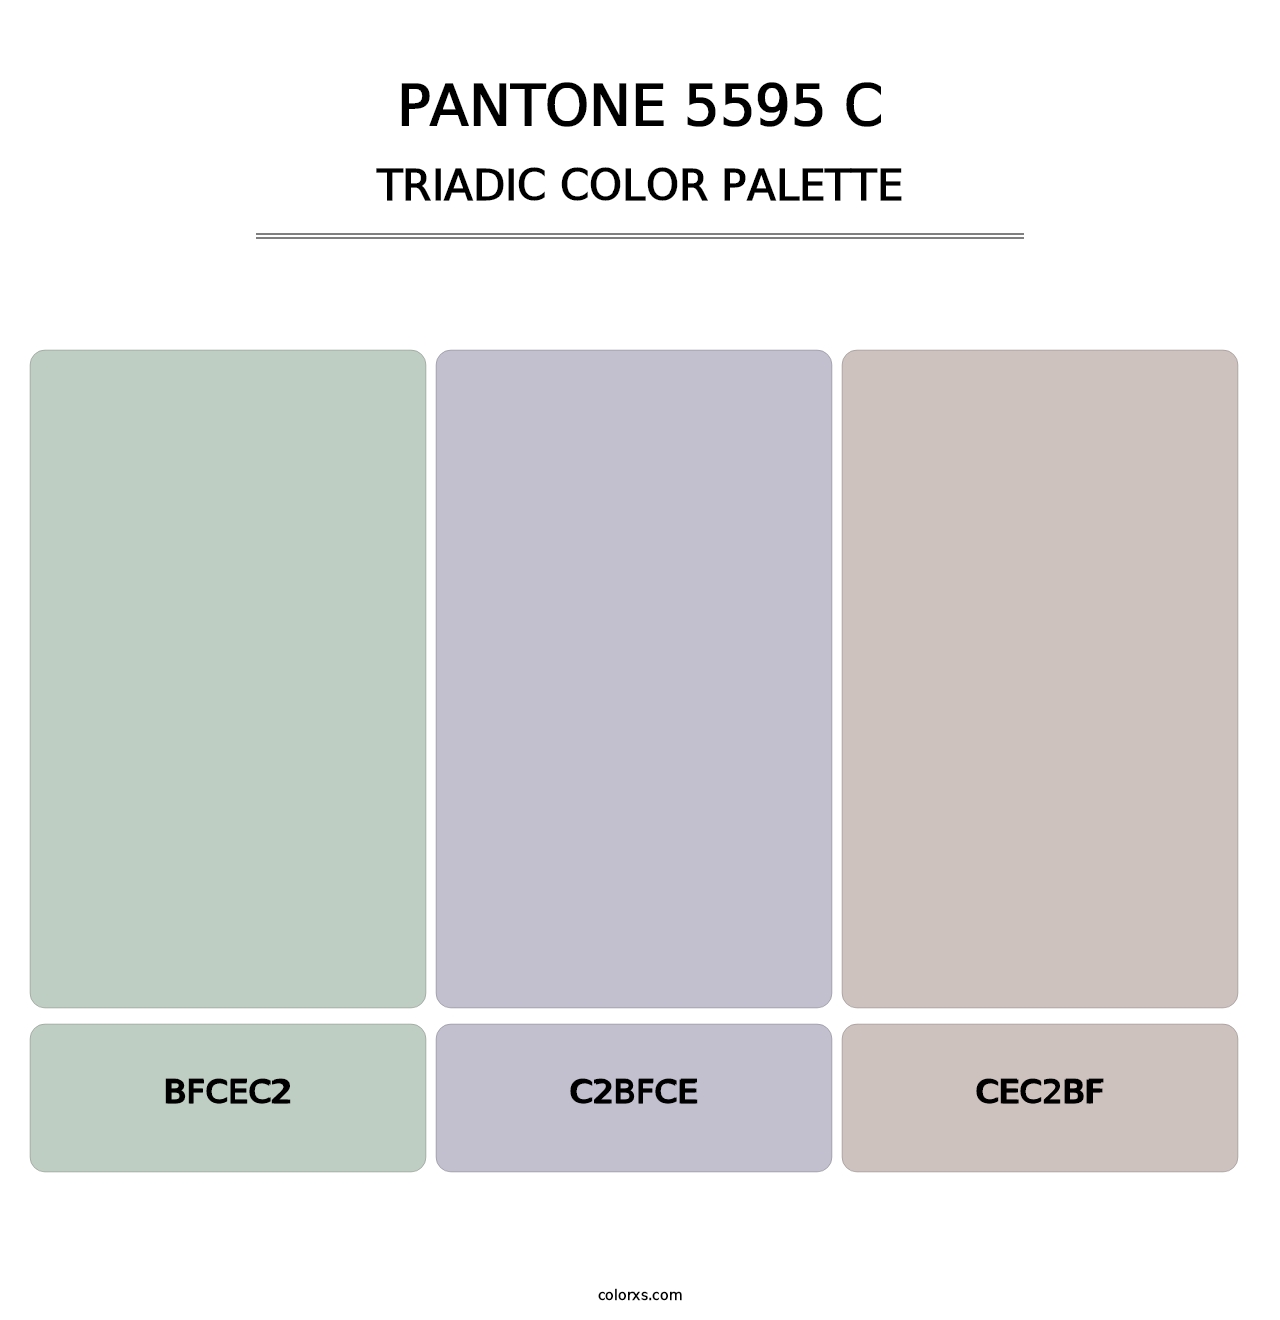 PANTONE 5595 C - Triadic Color Palette